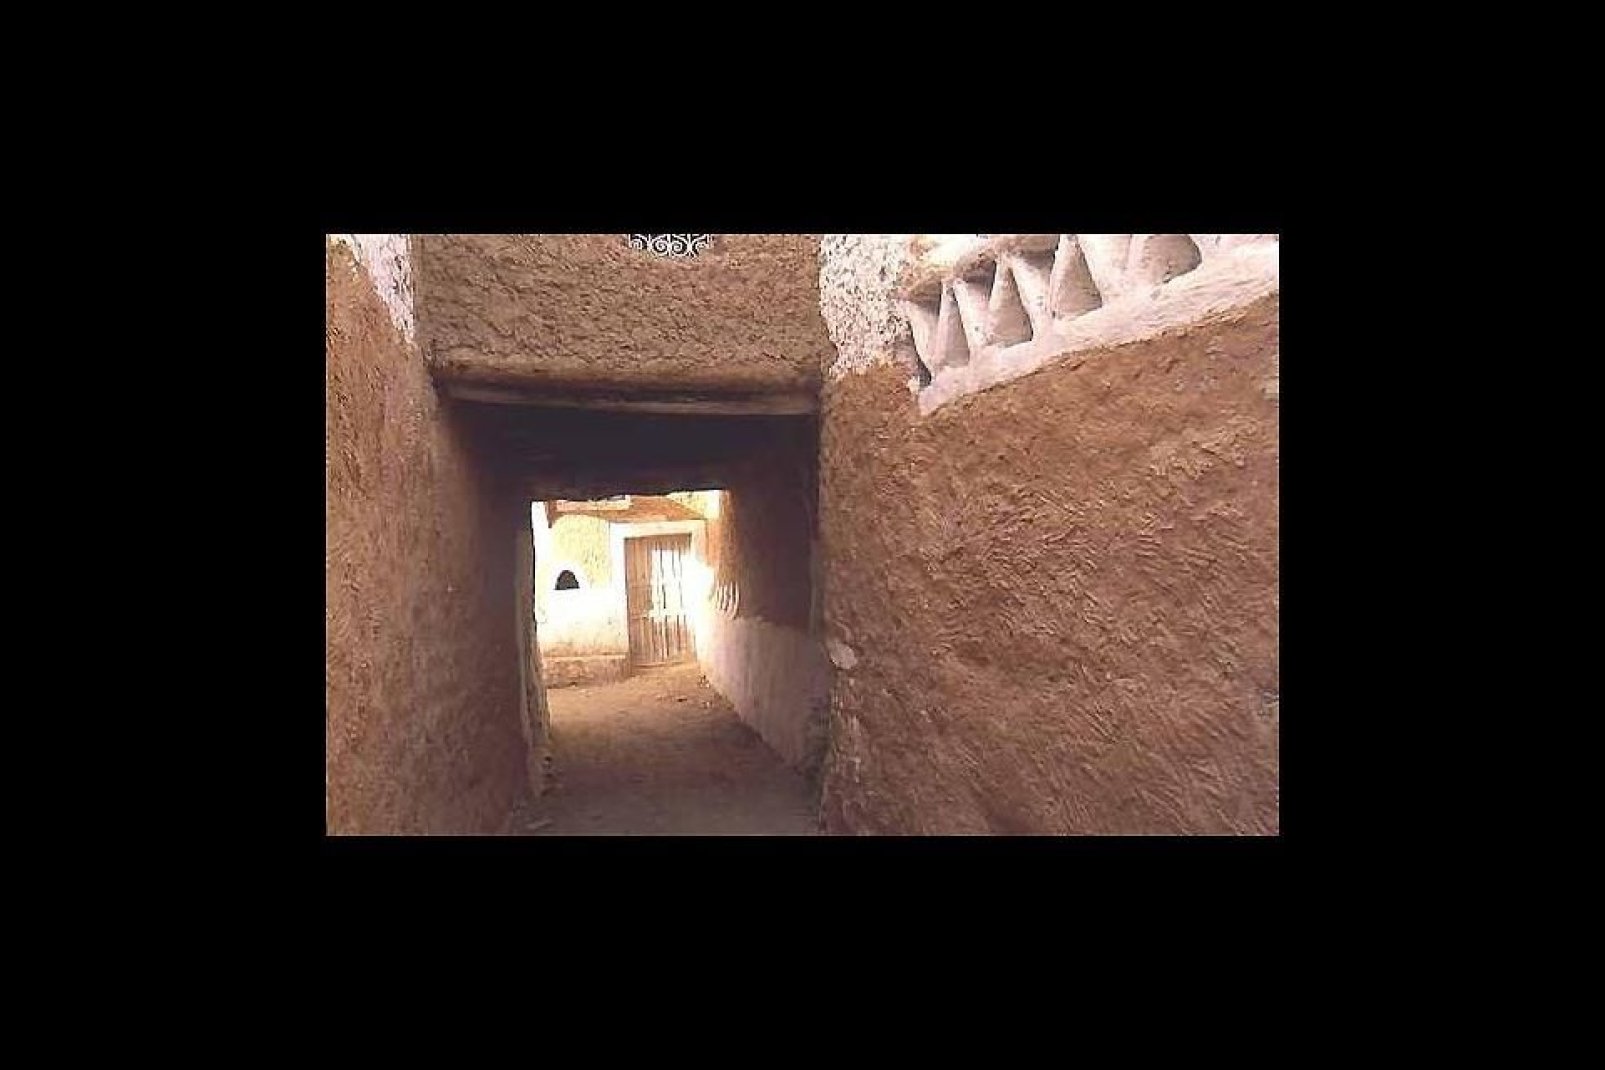 El centro fortificado de la ciudad de Gadamés, cerca de la frontera con Túnez, fue declarado Patrimonio Mundial de la Humanidad por la Unesco.